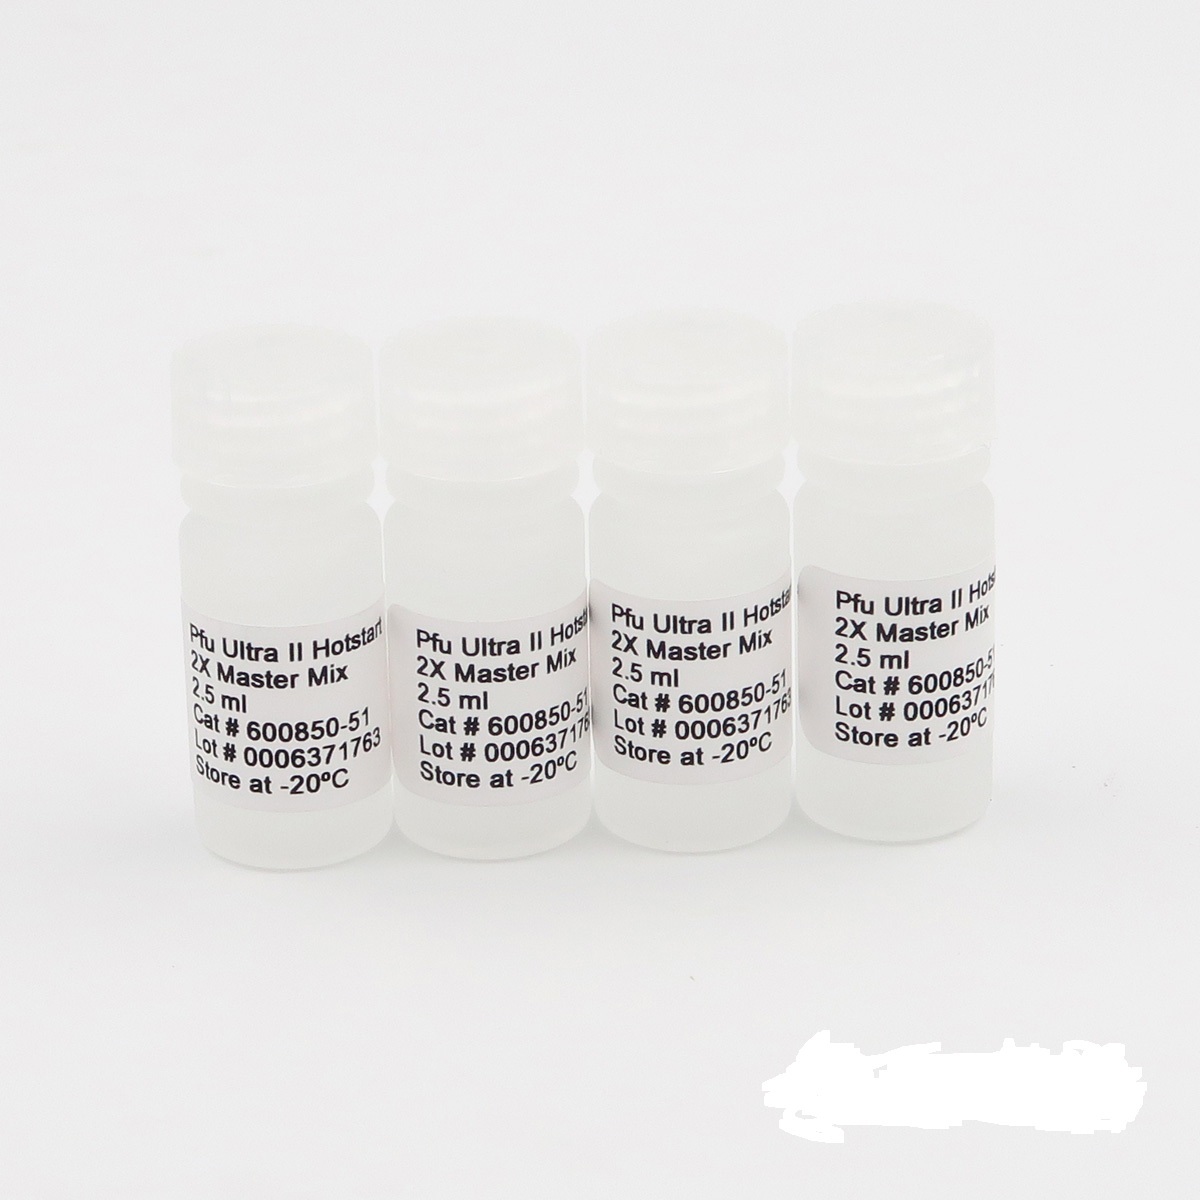 小麦线条花叶病毒RT-PCR试剂盒